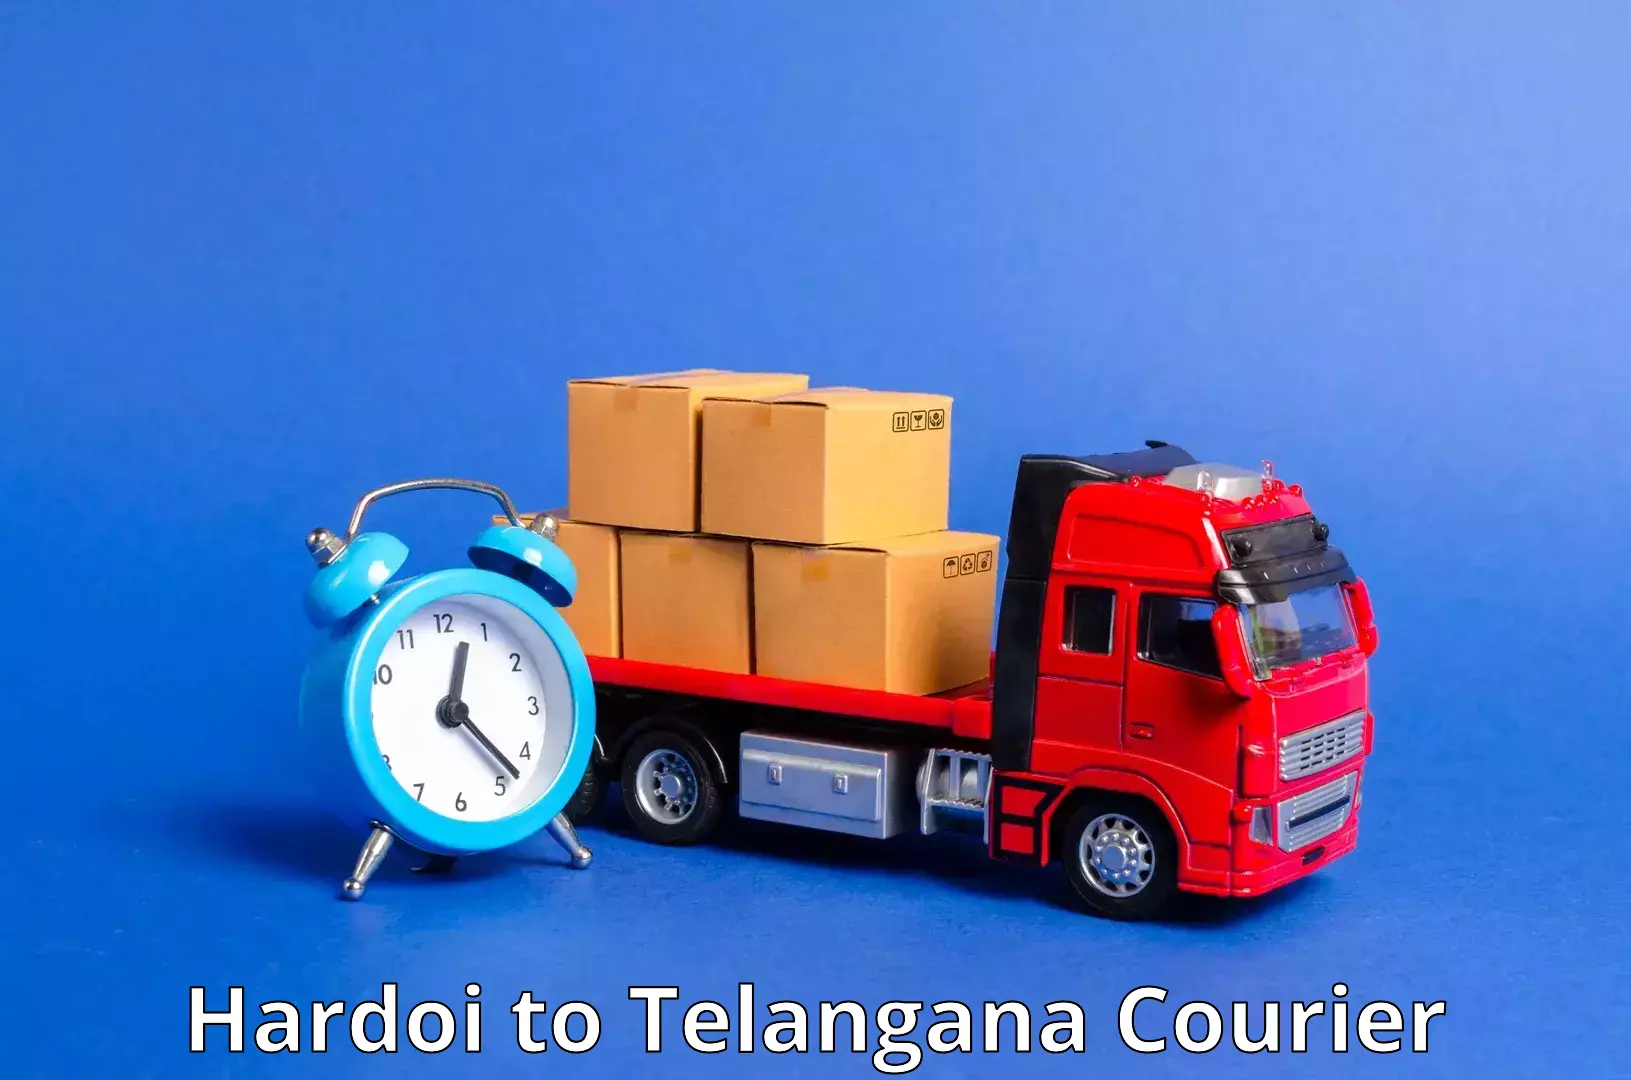 High-speed delivery Hardoi to Wanaparthy